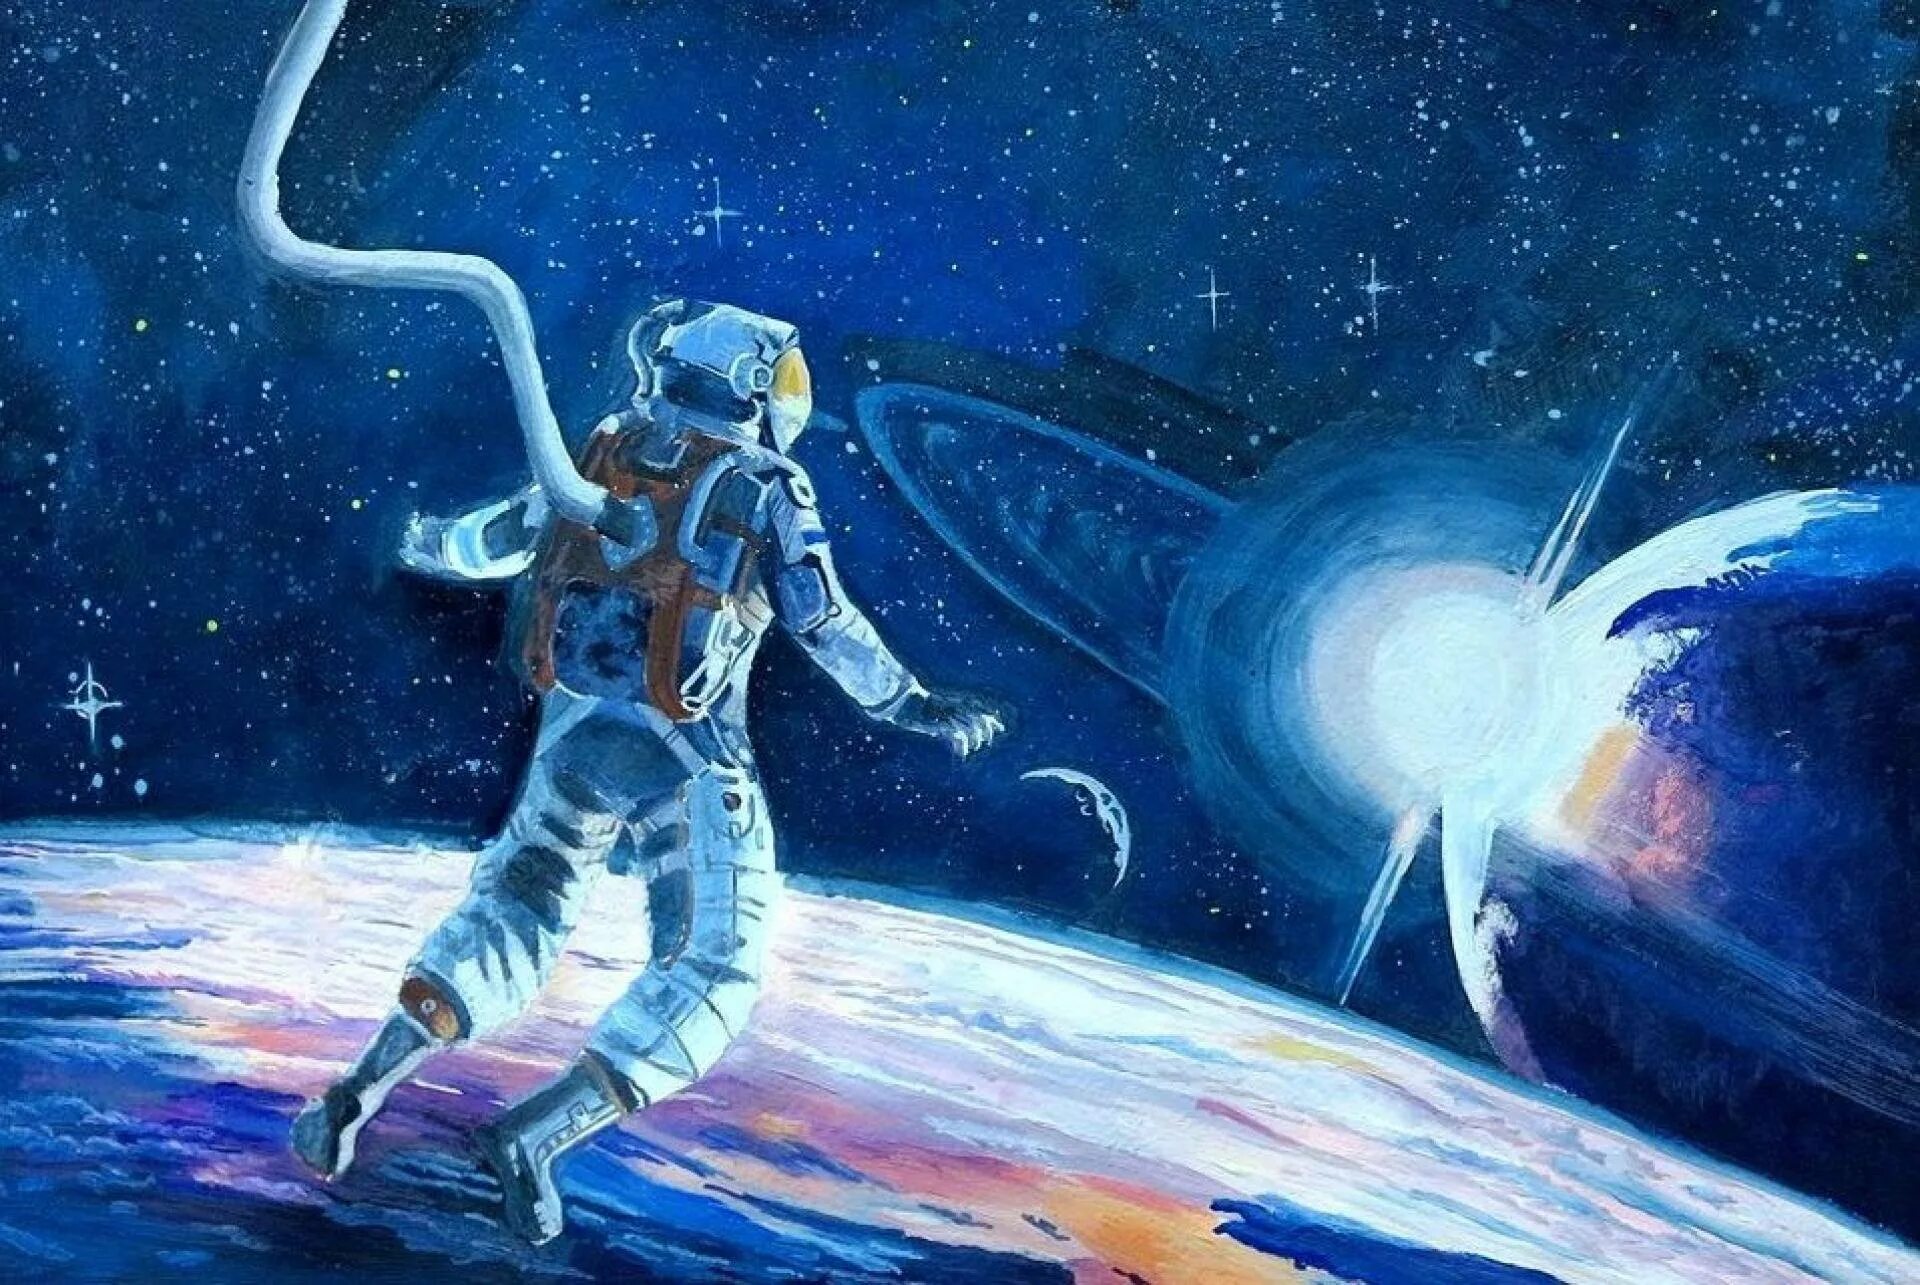 Про космос жизни. Рисунок на космическую тему. Космическая живопись. Картина космос. Тема космос.